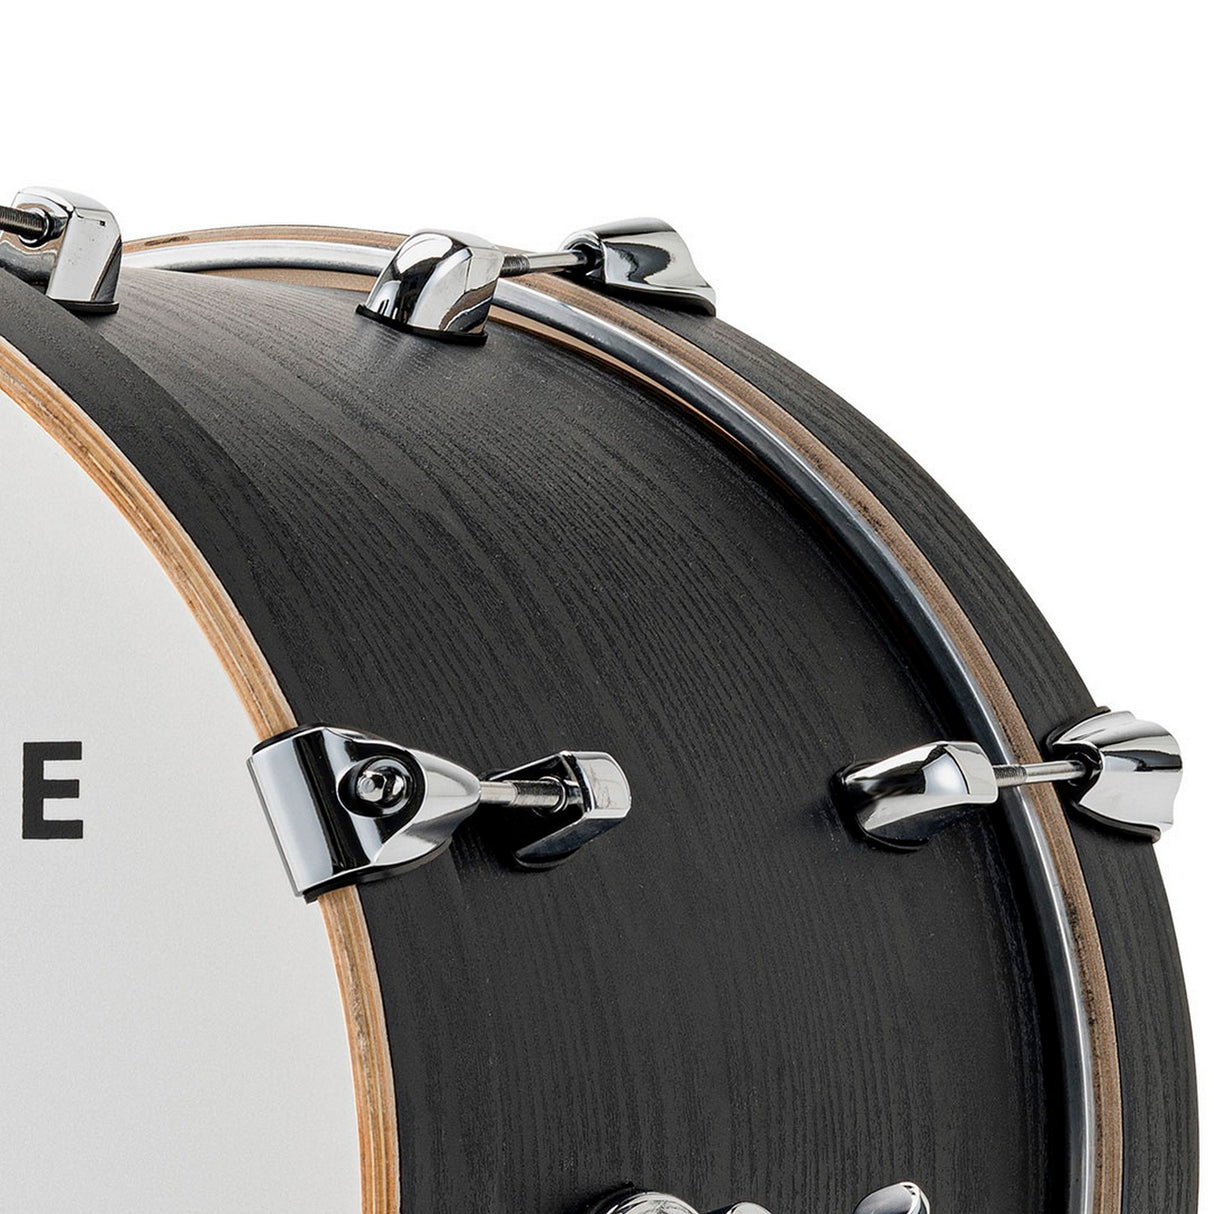 EFNOTE 5X Acoustic Designed Electronic Drum Set, Black Oak Wrap